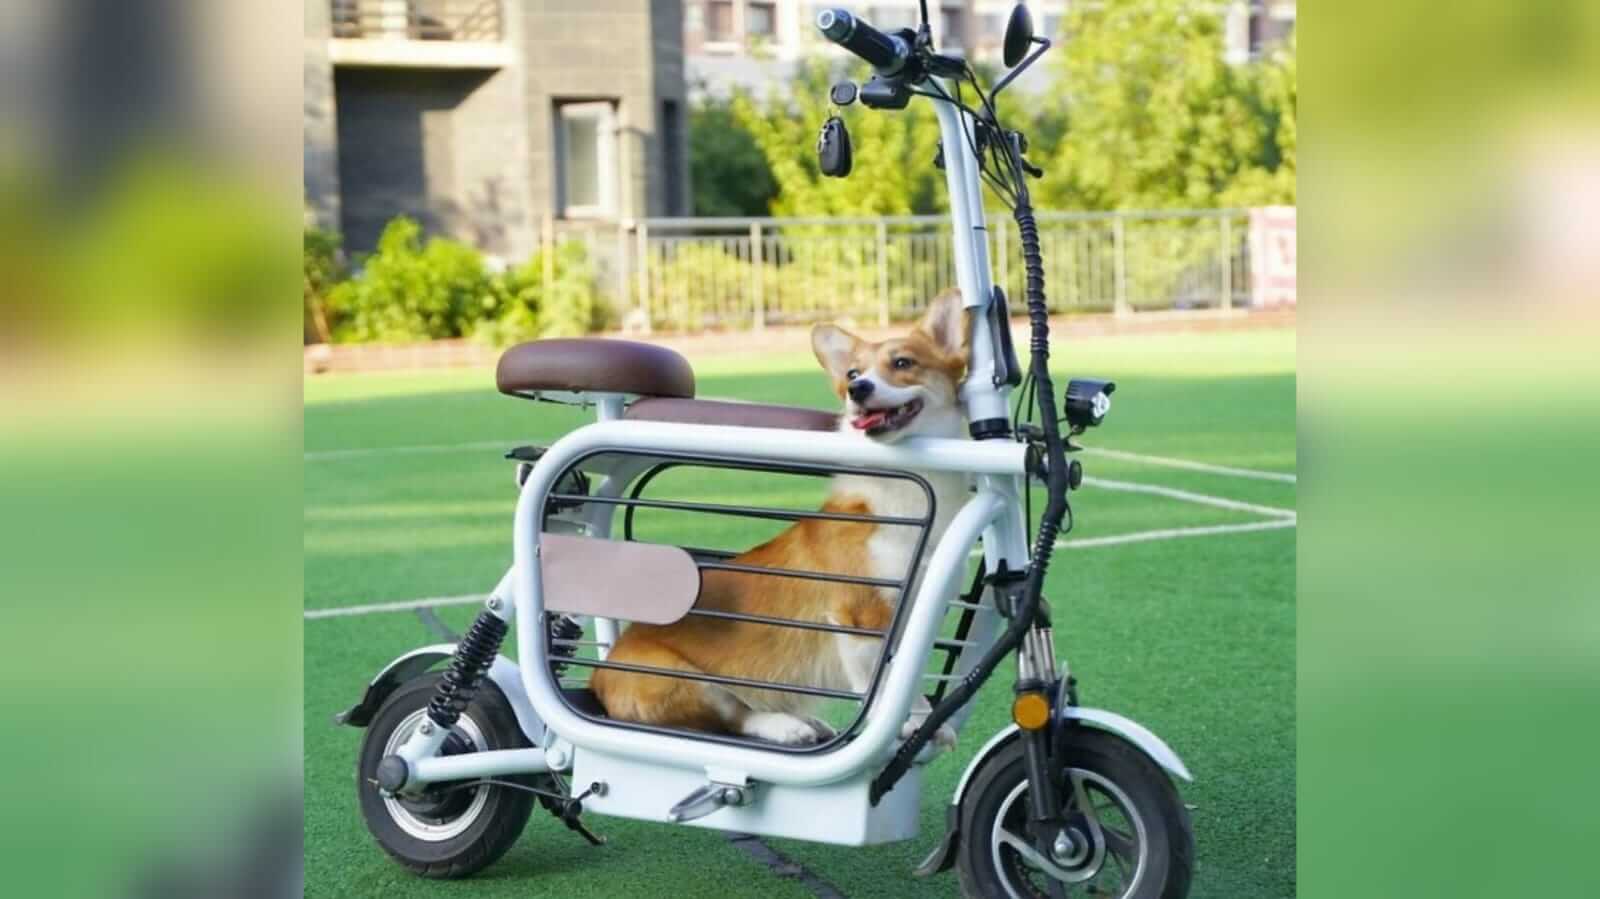 Motocicleta com cachorro